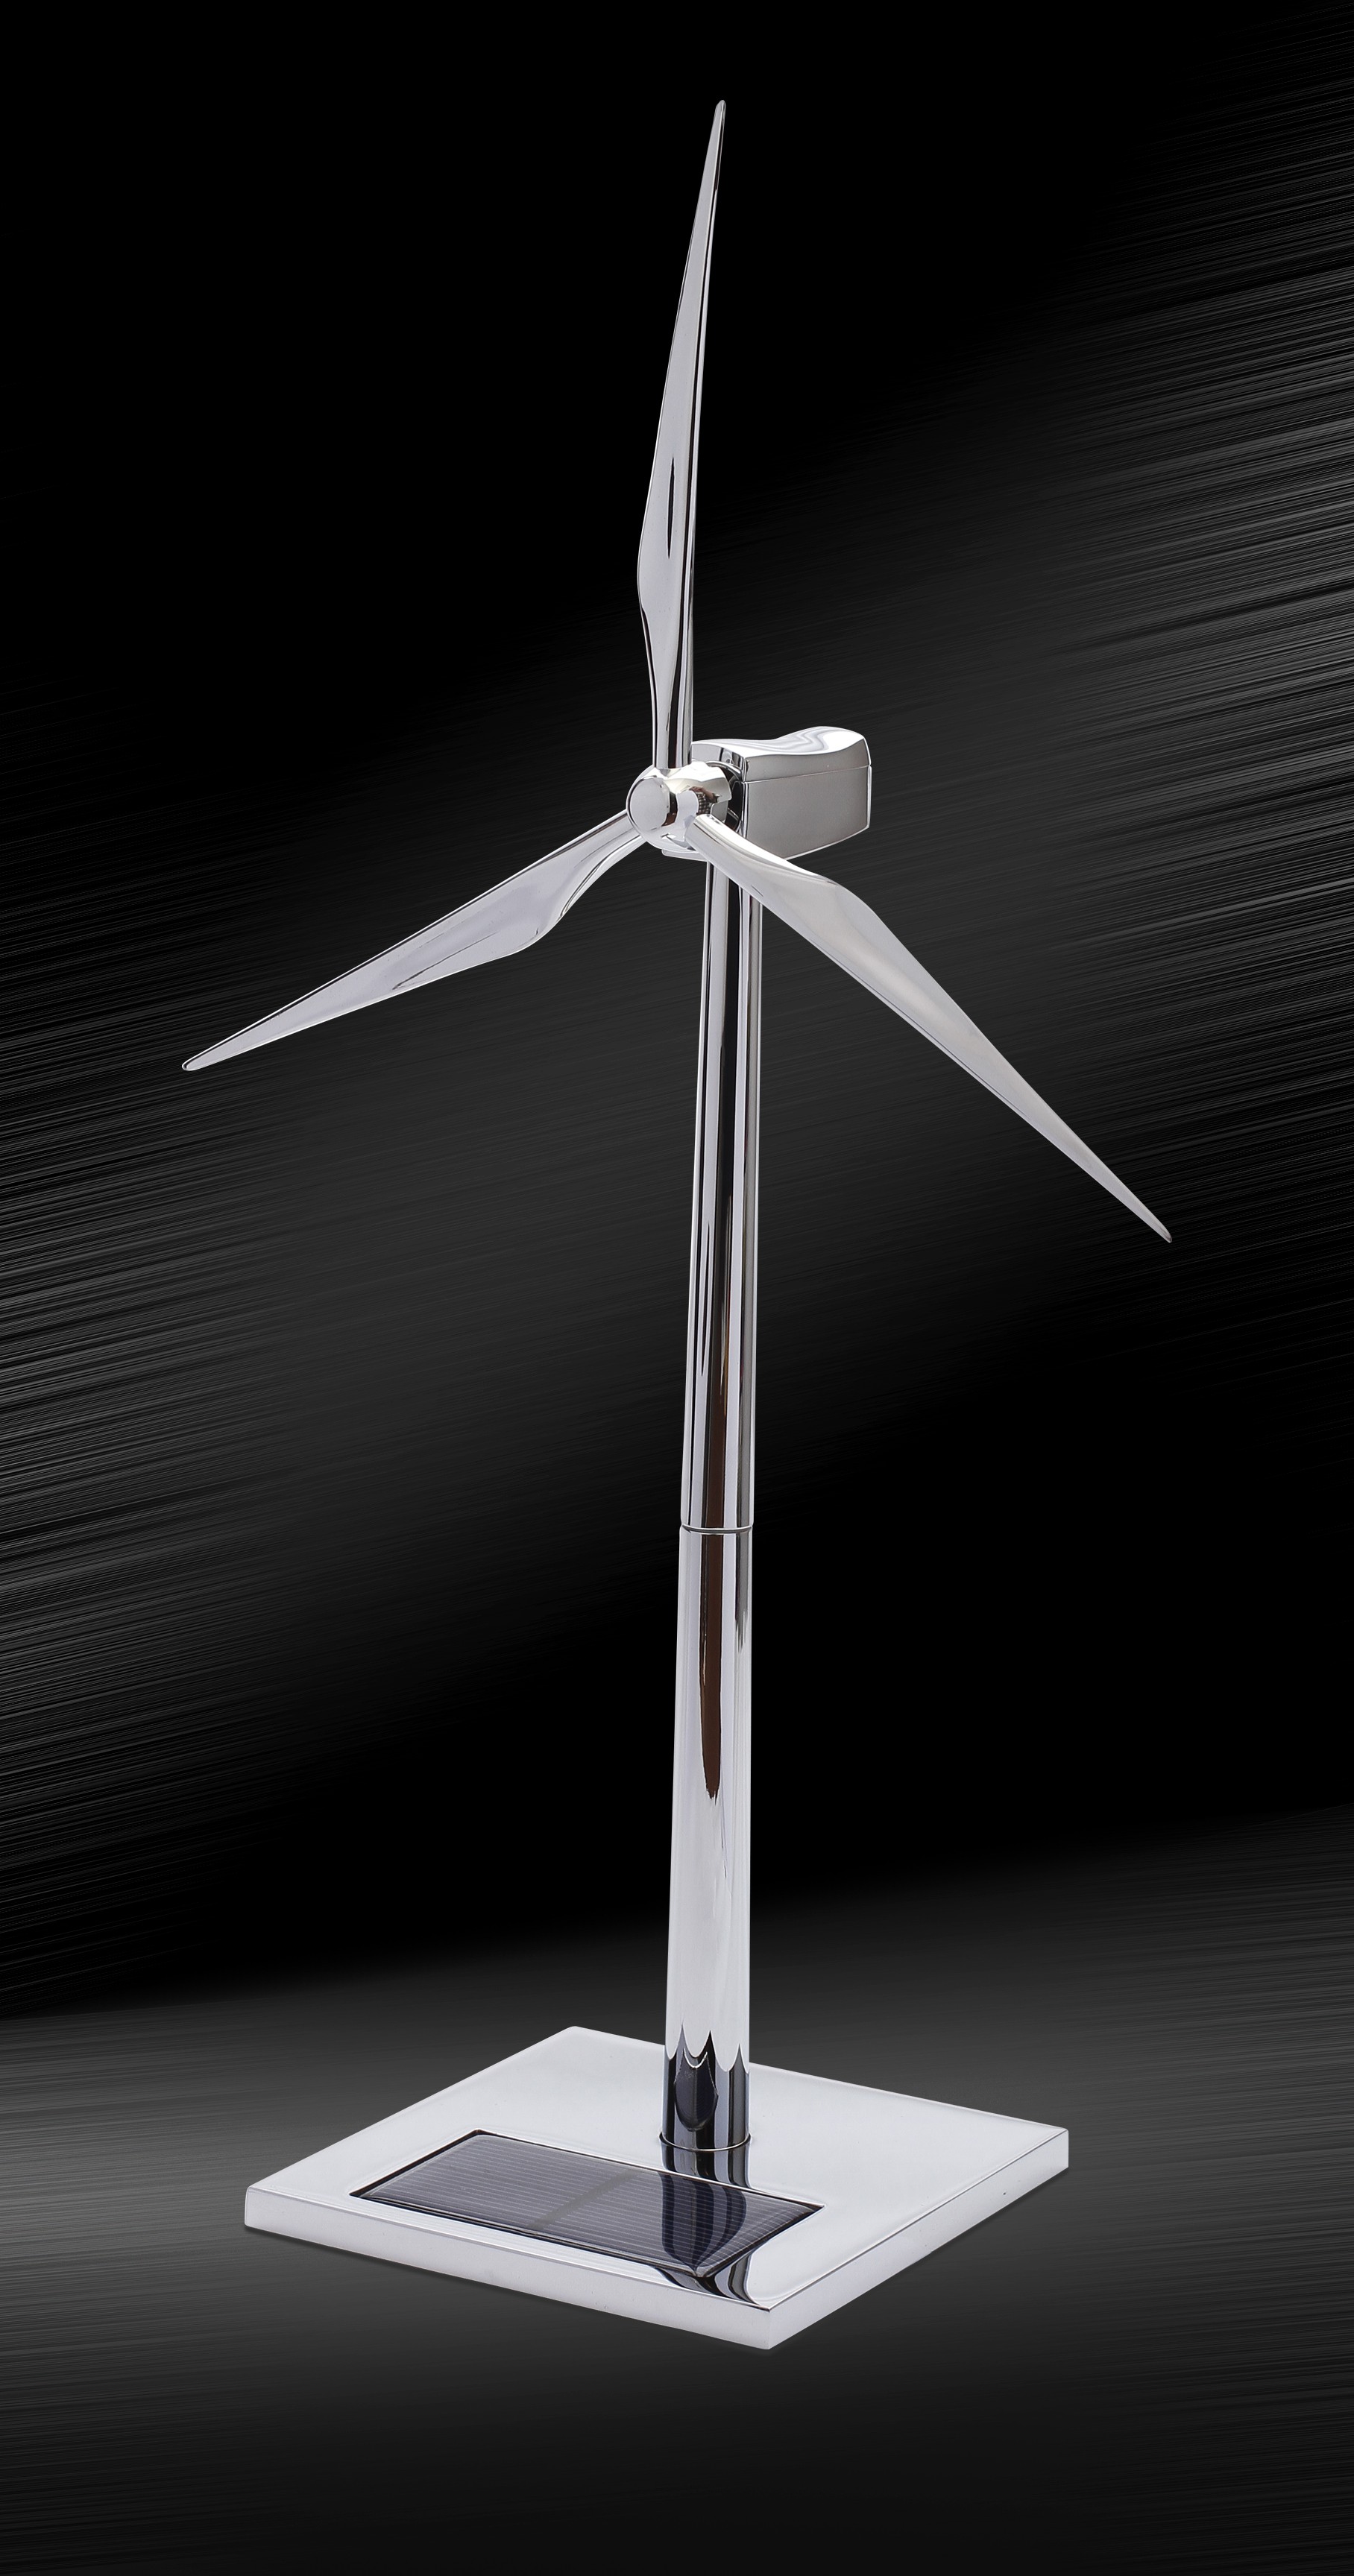 太阳能风车模型 太阳能银色风力发电机模型 风机模型